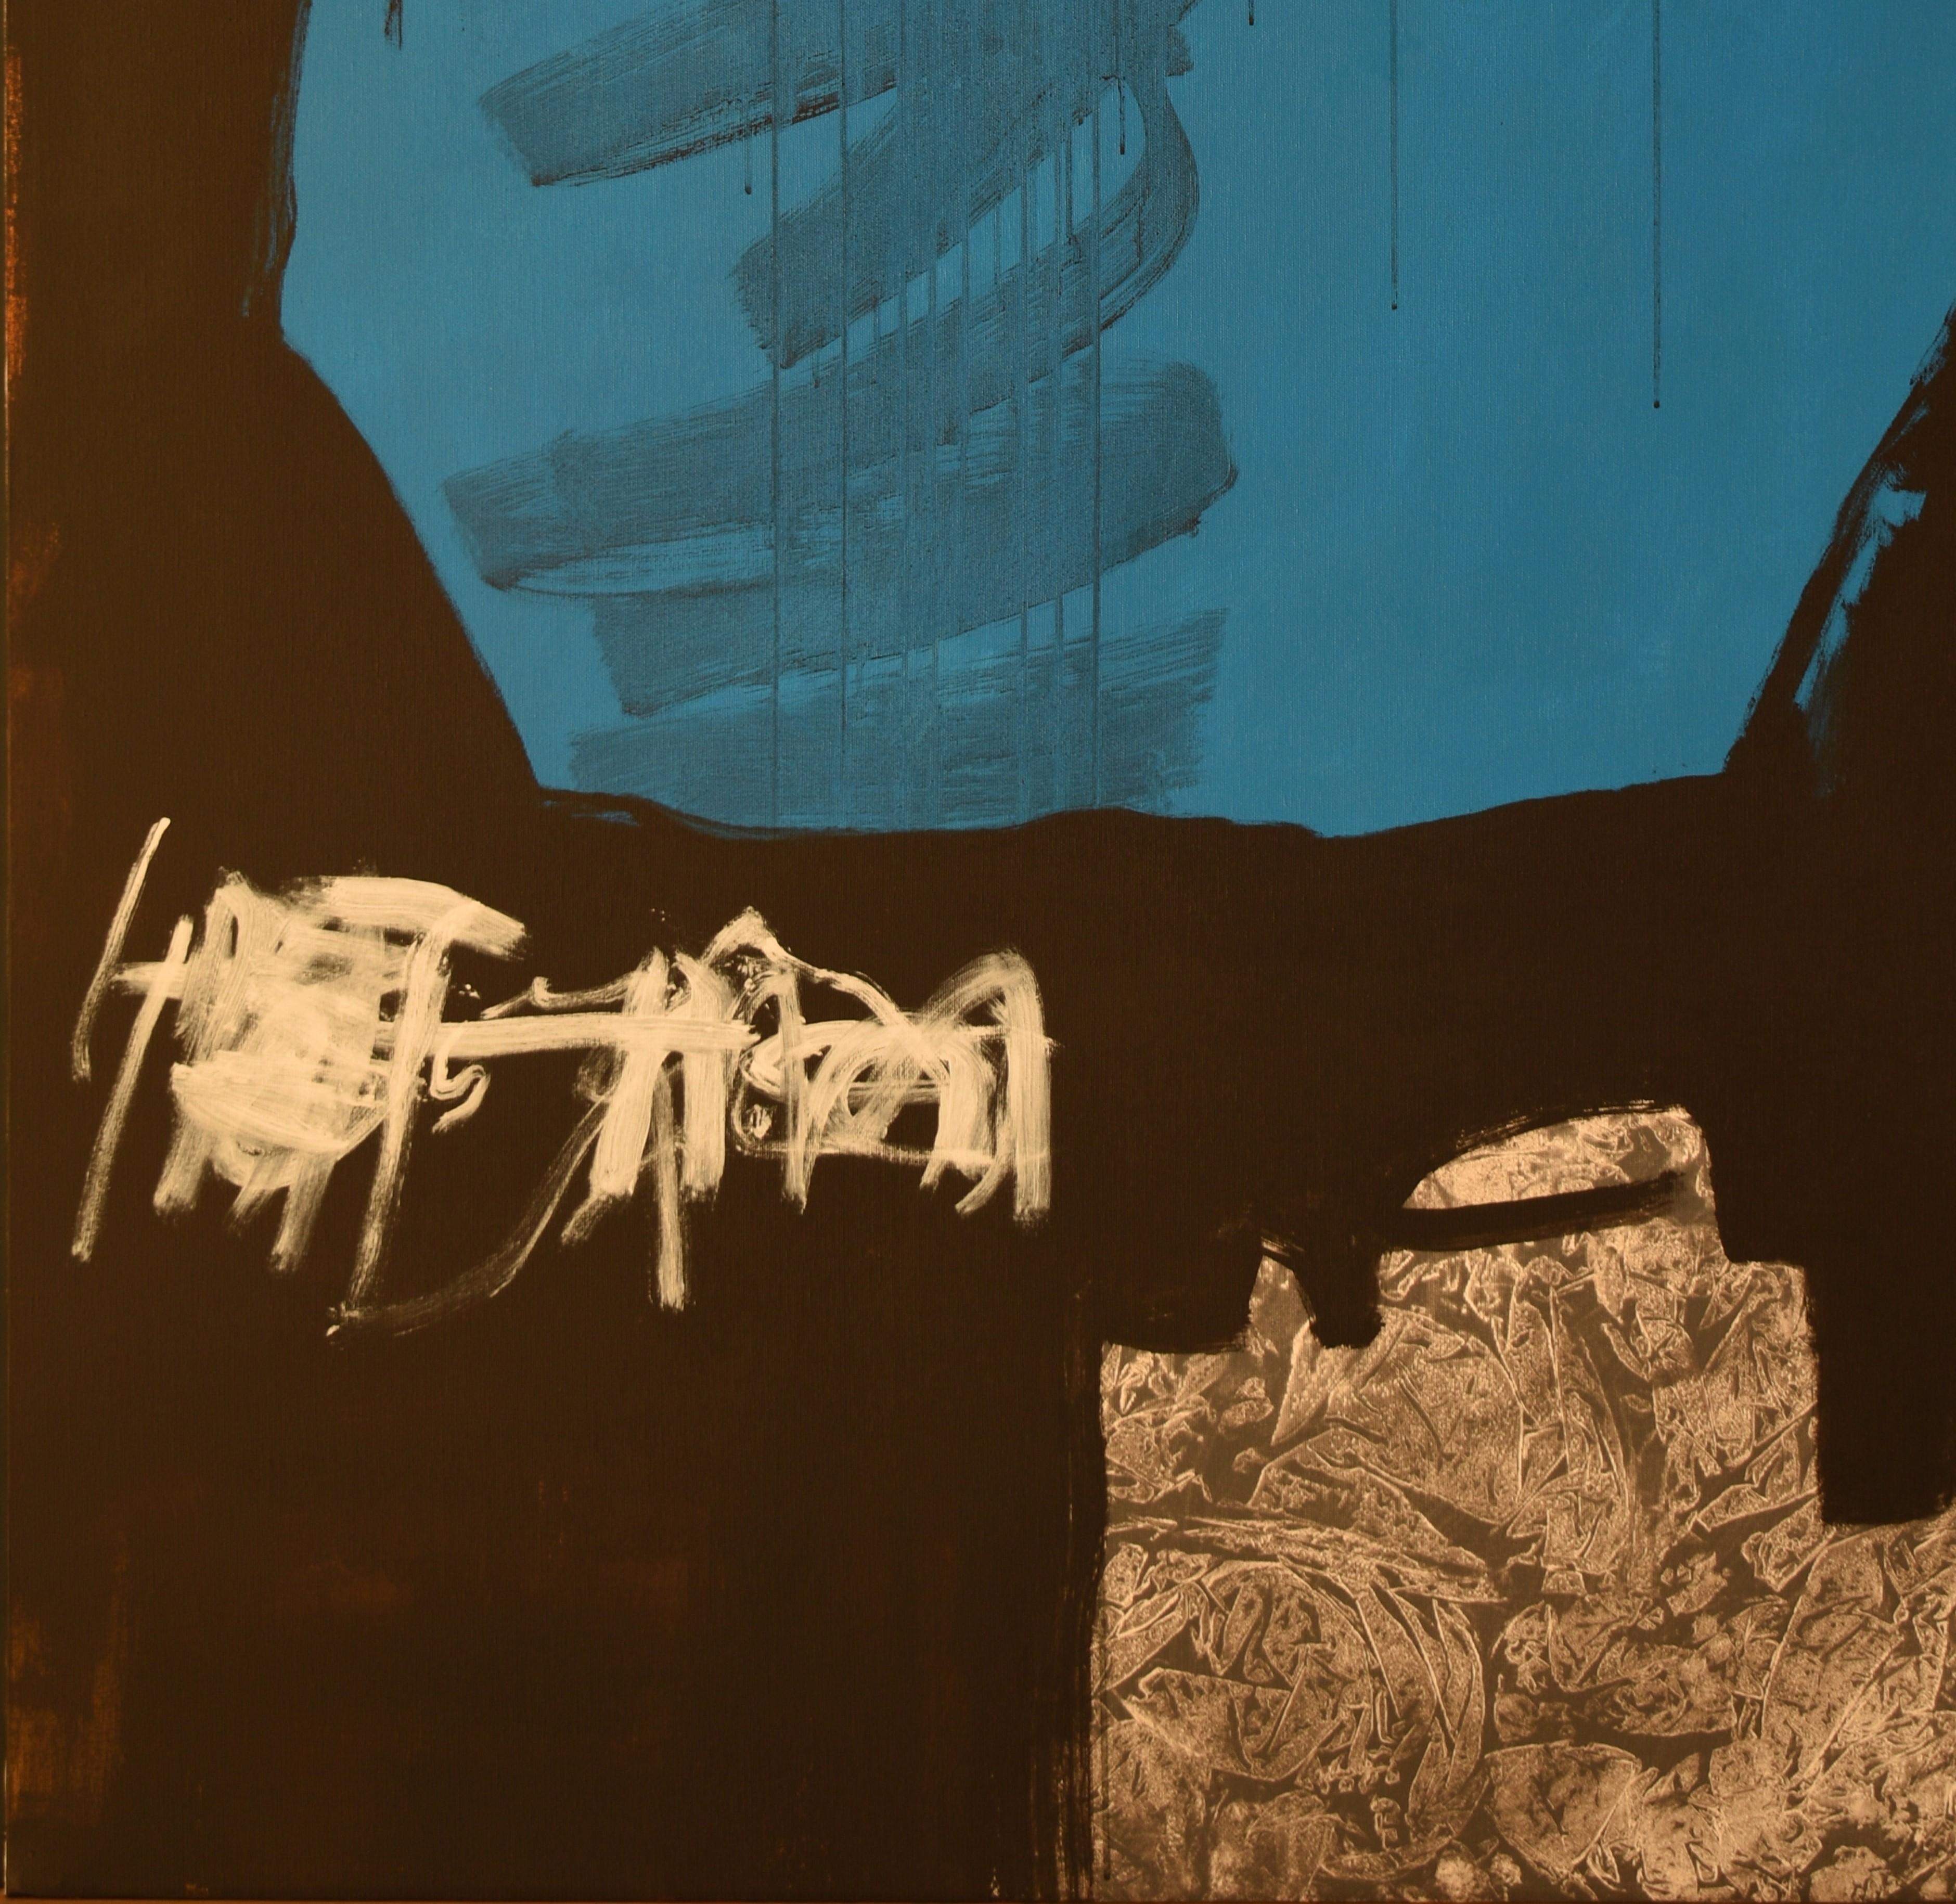 Ruz 18.1  Noir  Bigli  Vertical  Bleu  Danza - Acrylique abstraite  Peinture sur toile - Abstrait Painting par RAFAEL RUZ